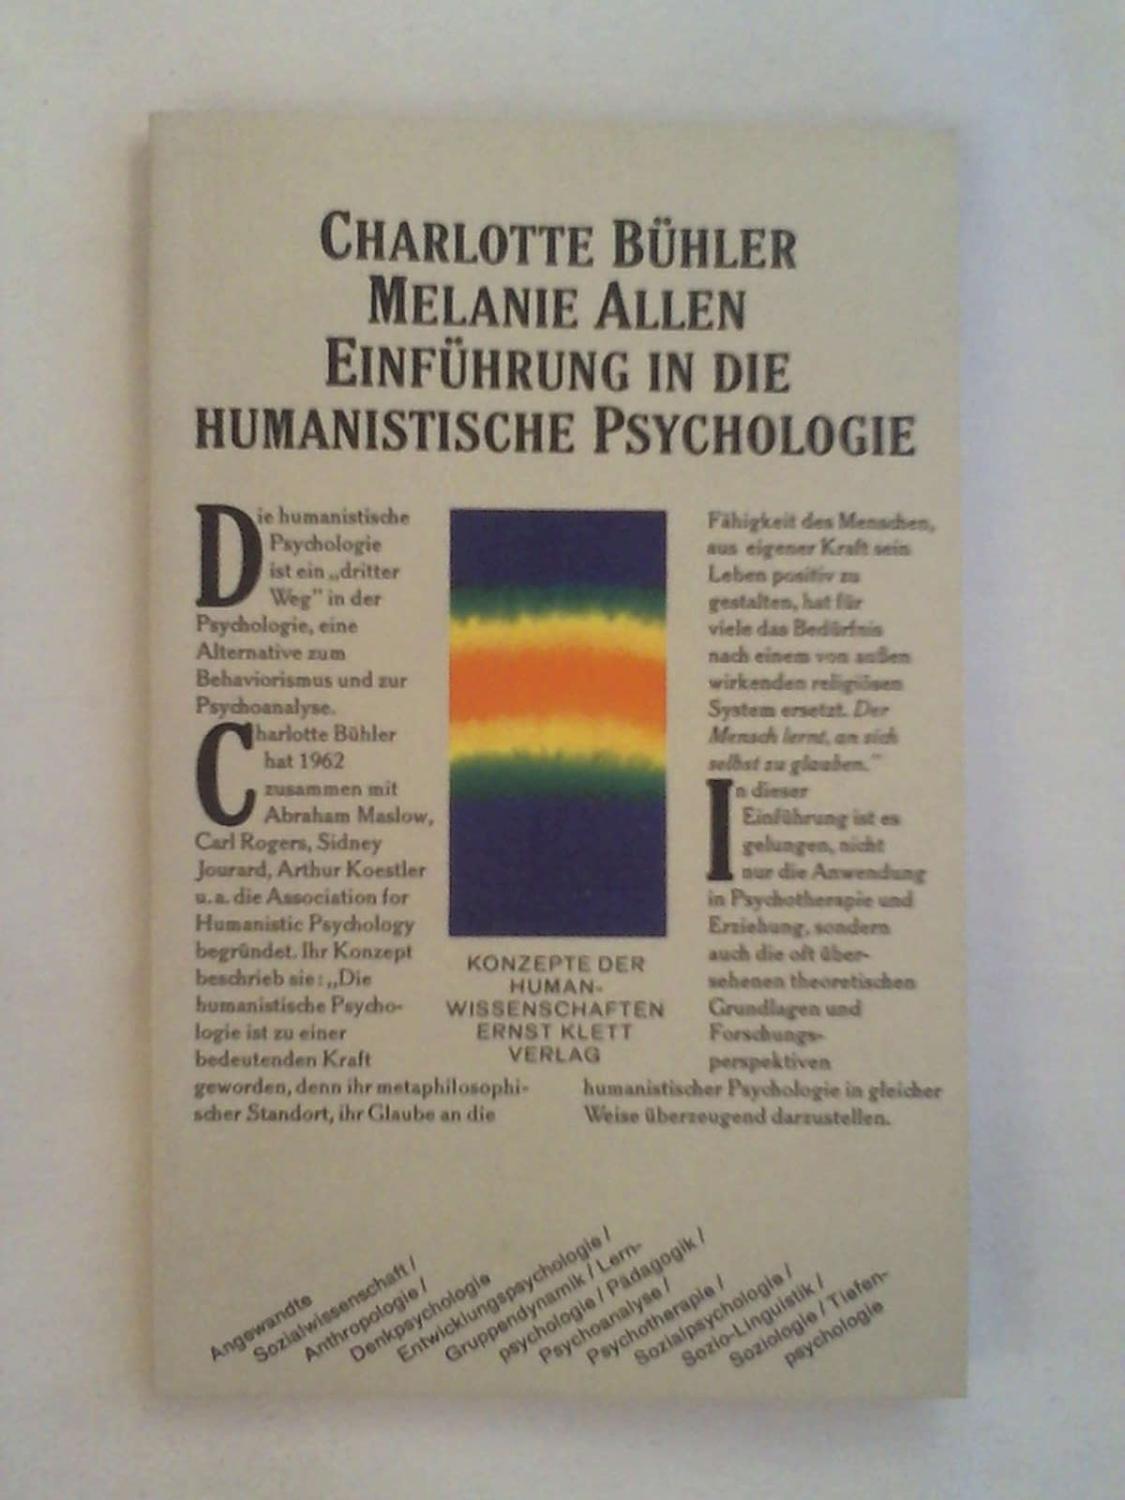 Einführung in die humanistische Psychologie - Charlotte Bühler - Melanie Allen